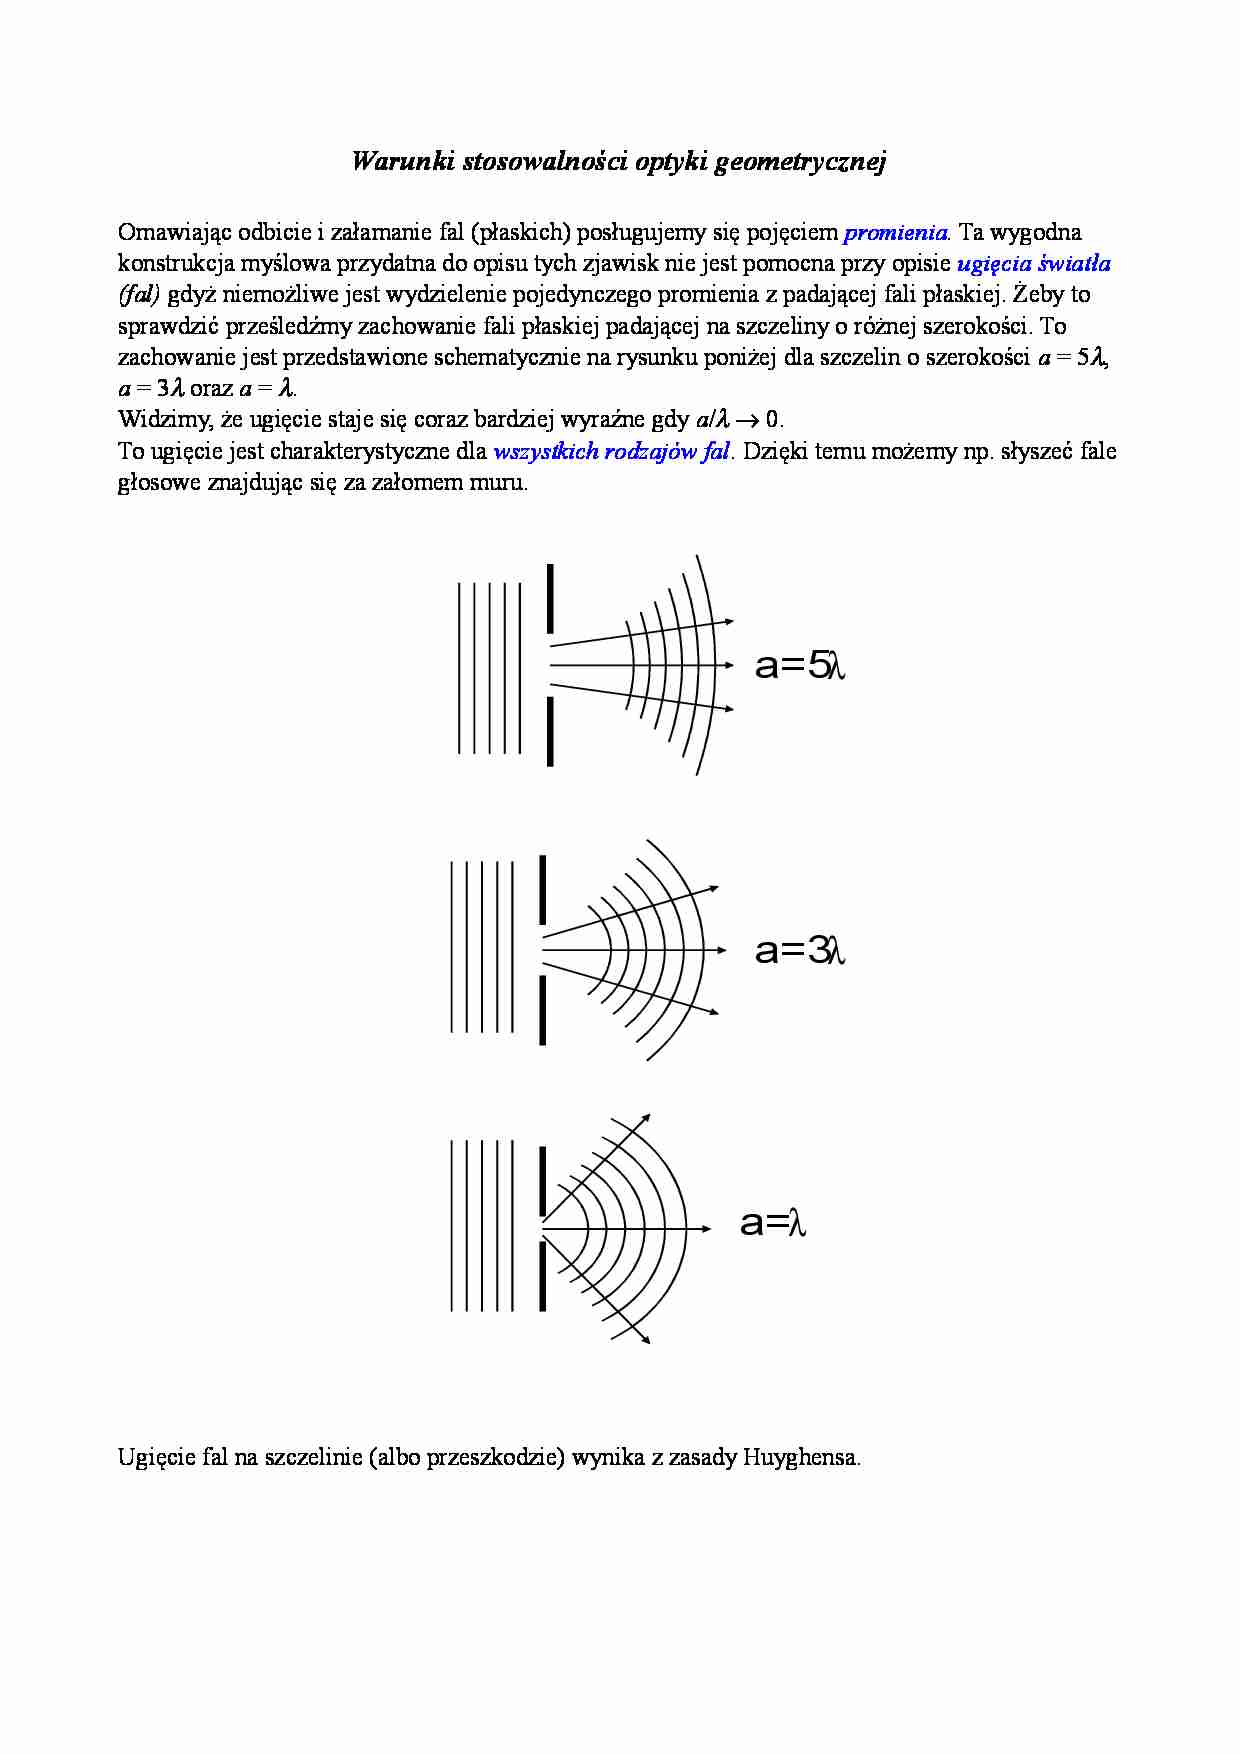 Warunki stosowalności optyki geometrycznej - strona 1